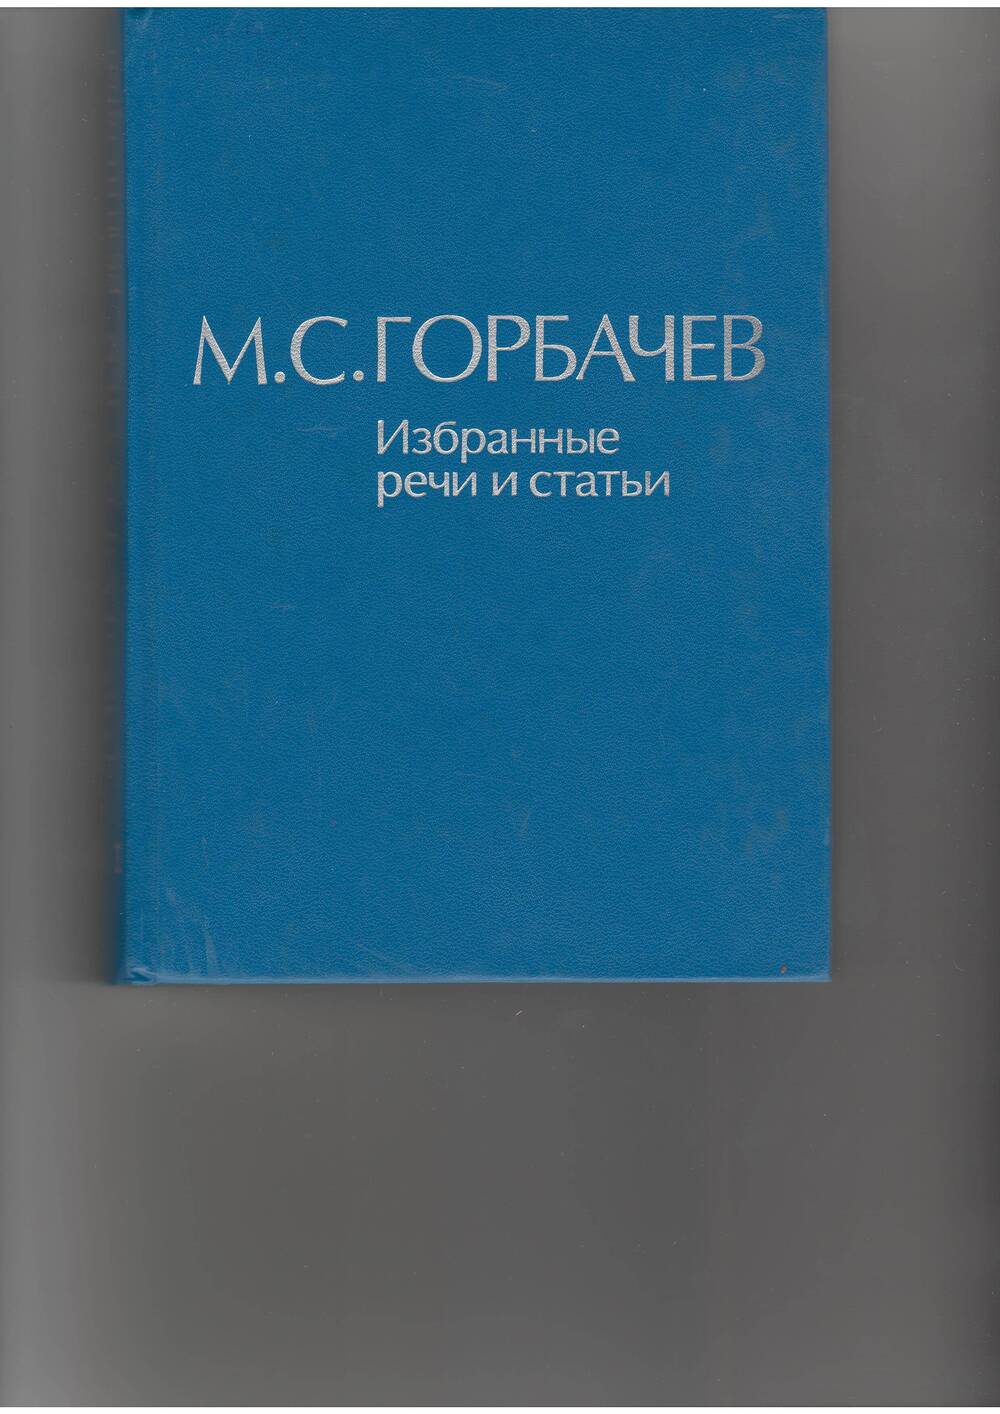 книга  Горбачев М. С. Избранные речи и статьи.т.3. - М: Наука,1987.